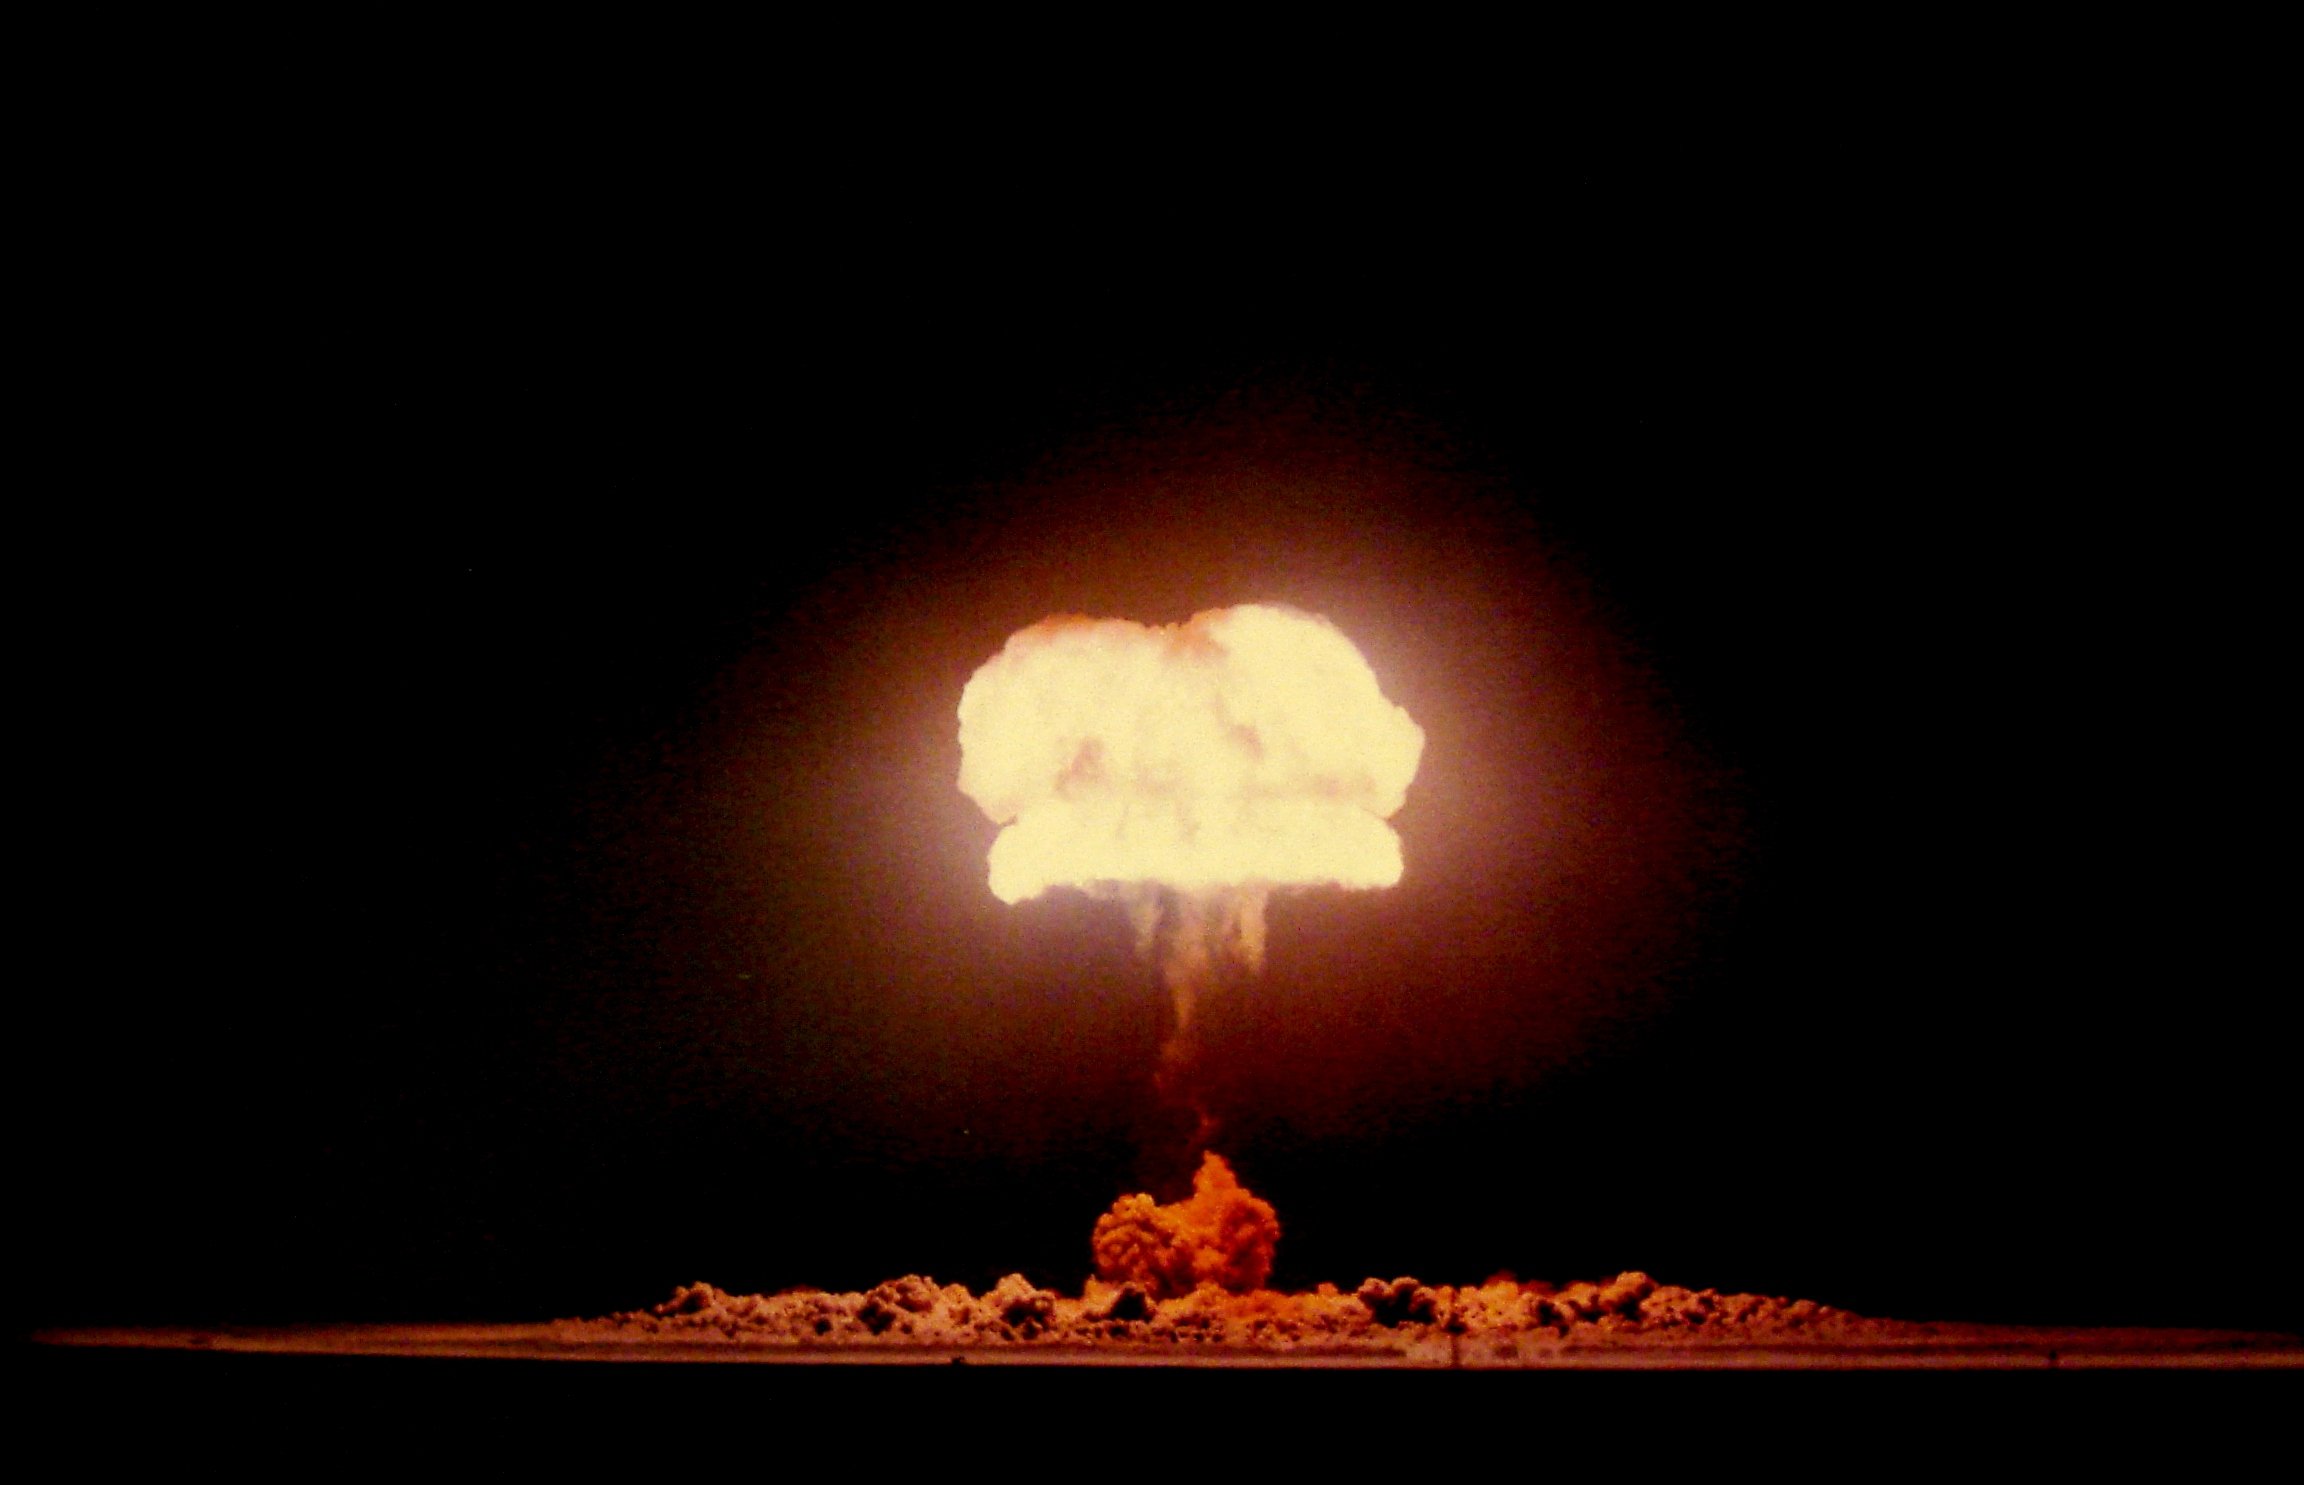 Вспышка ядерного взрыва. Ядерное оружие световое излучение. Световое излучение ядерного взрыва. Ядерный взрыв 40мт. Высотный взрыв ядерного оружия.